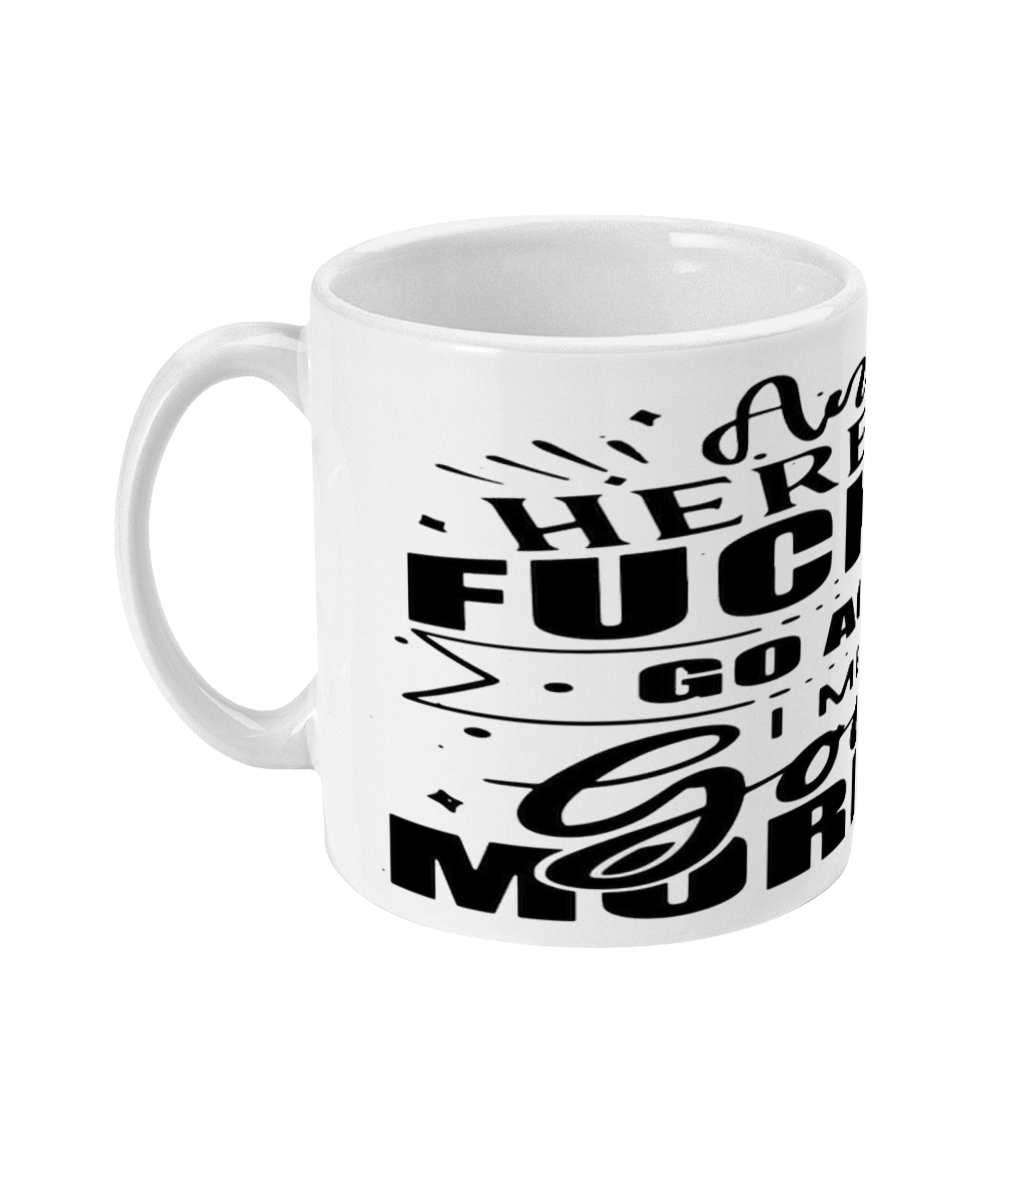  Naughty Good Morning Mug by Free Spirit Accessories sold by Free Spirit Accessories